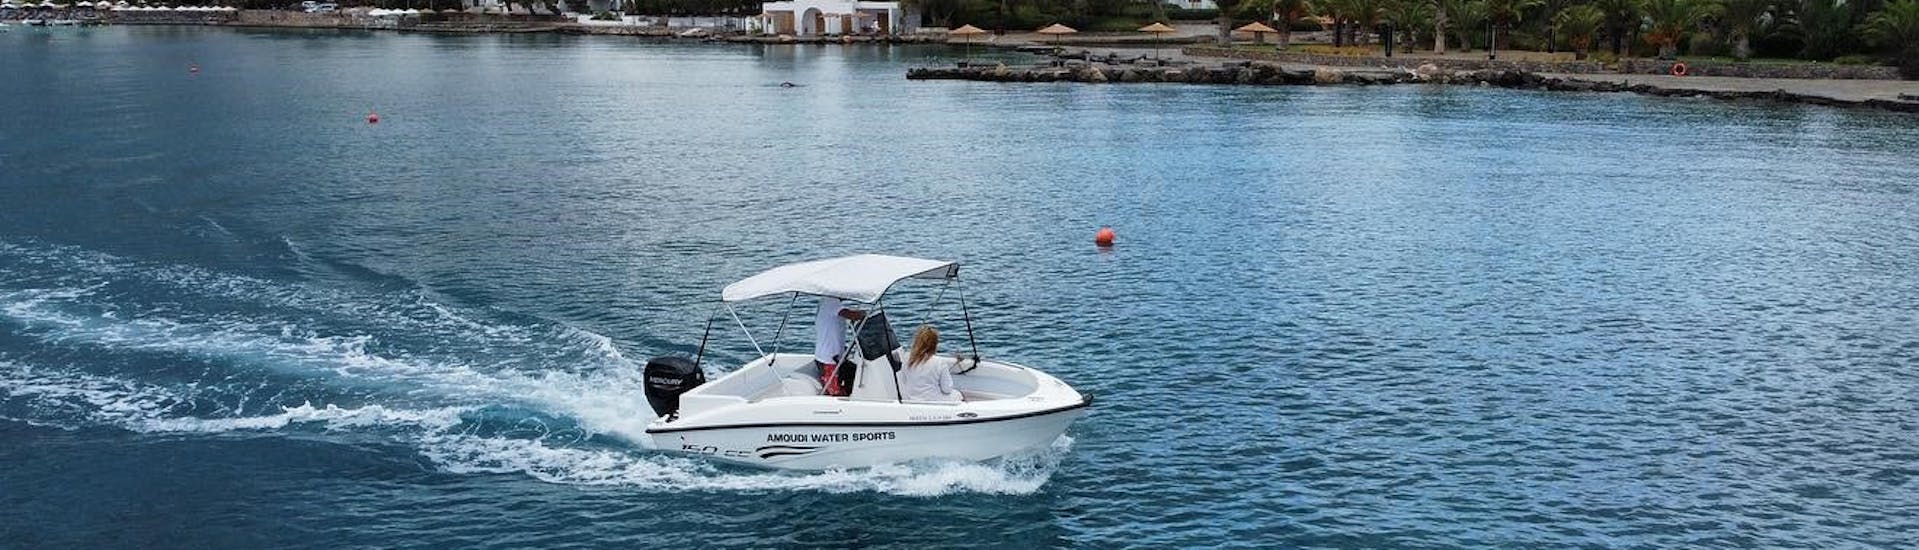 L'imbarcazione sta navigando lungo la costa durante il Noleggio barca ad Agios Nikolaos (fino a 6 persone) senza patente con Amoudi Watersports.